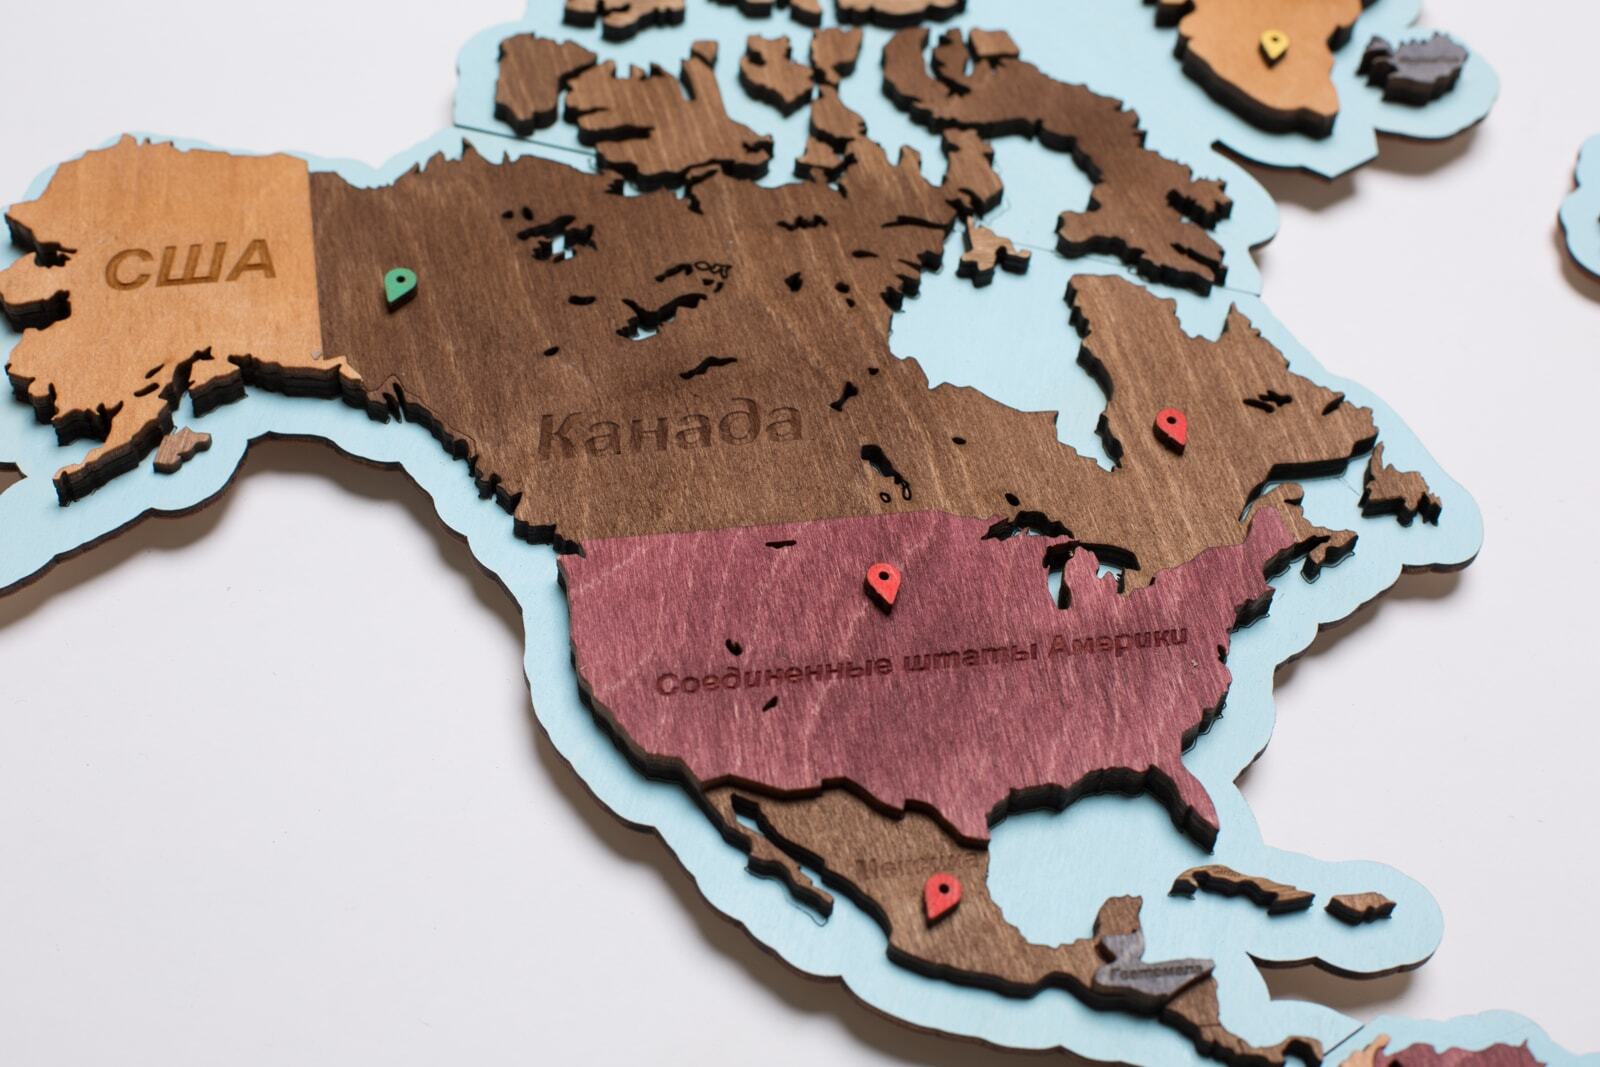 деревянная карта мира на стену